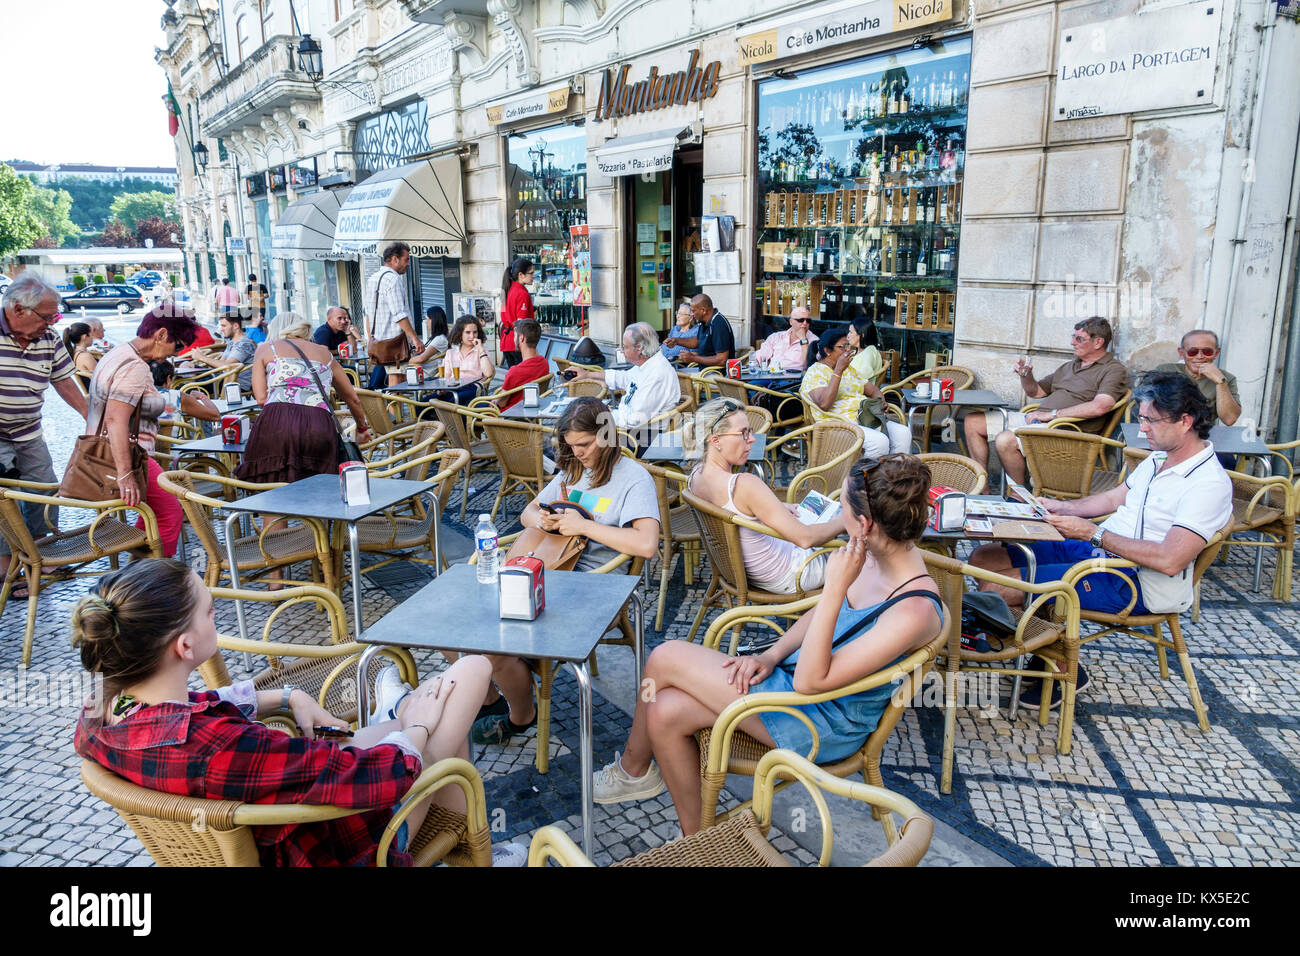 Coimbra Portugal, centro storico, Largo da Portagem, piazza principale, Cafe Montanha, ristorante ristoranti, cibo, caffè, al fresco, marciapiede fuori Foto Stock